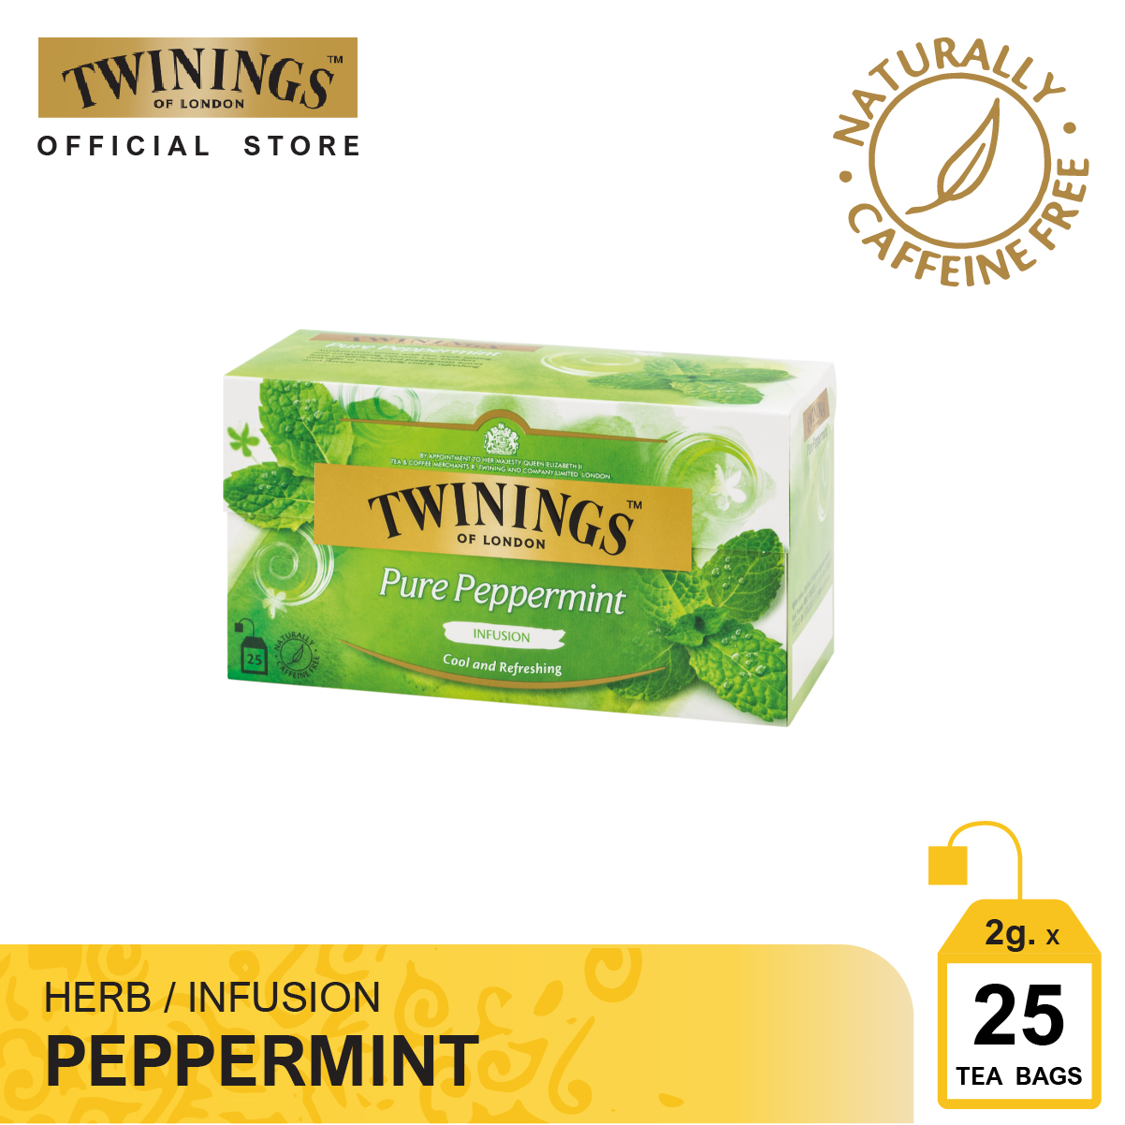 ทไวนิงส์ เครื่องดื่ม เพียว เปปเปอร์มินท์ ชนิดซอง 2 กรัม แพ็ค 25 ซอง Twinings Pure Peppermint 2 g. Pack 25 Tea Bags